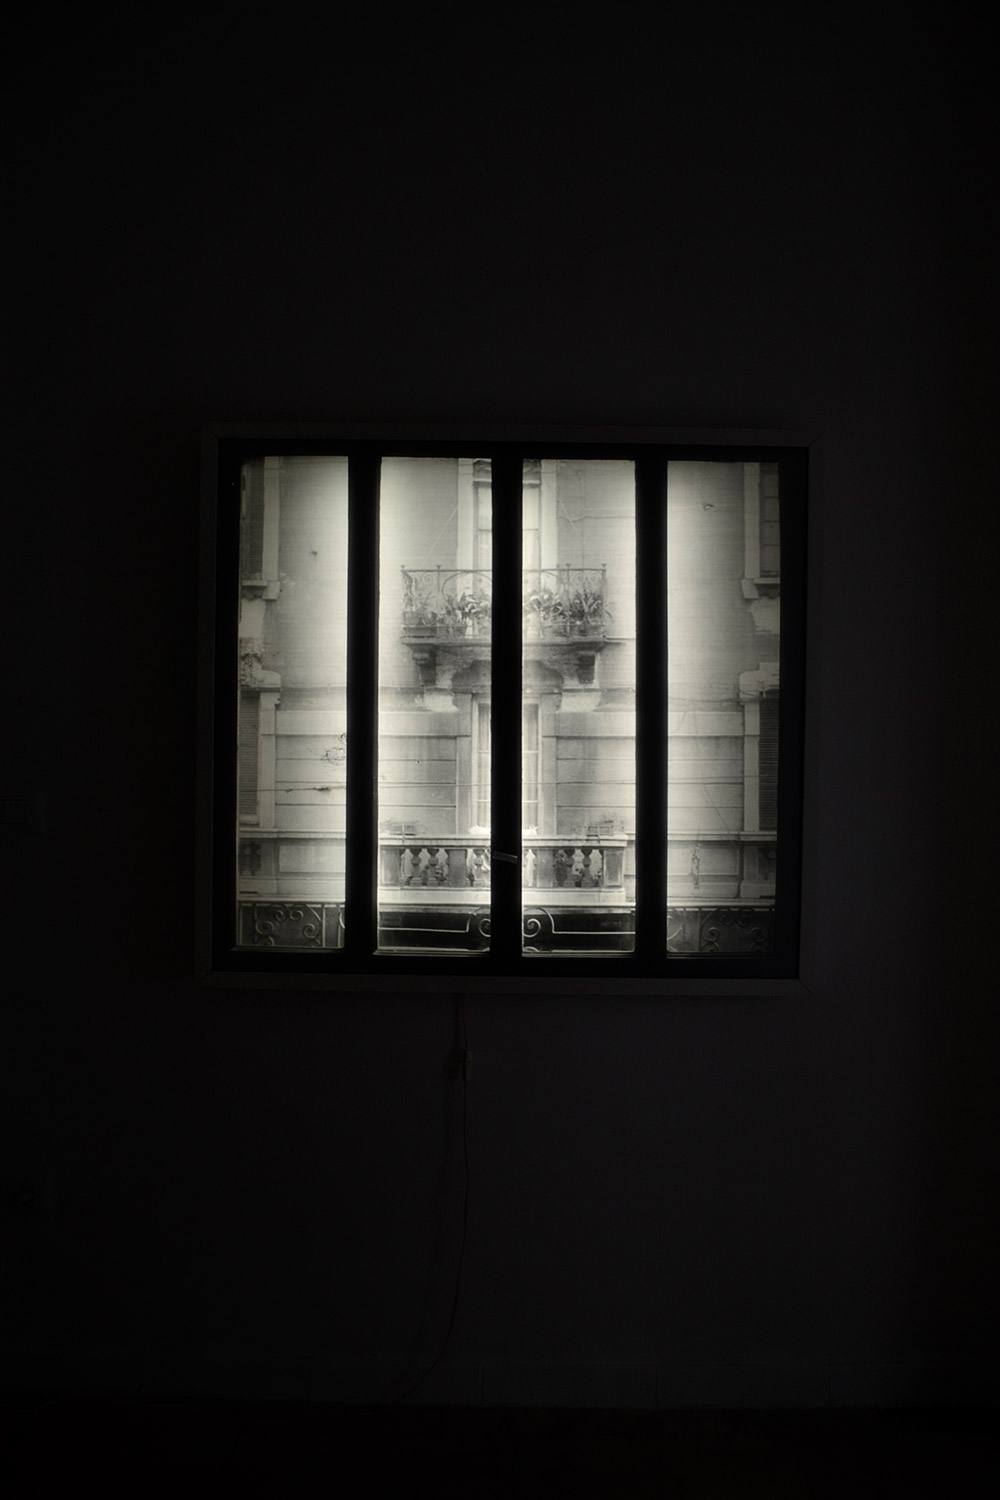 Antonio Trotta, Finestra su vetro, 1972, light box, emulsione su vetro, 120x120x12 cm (ON)